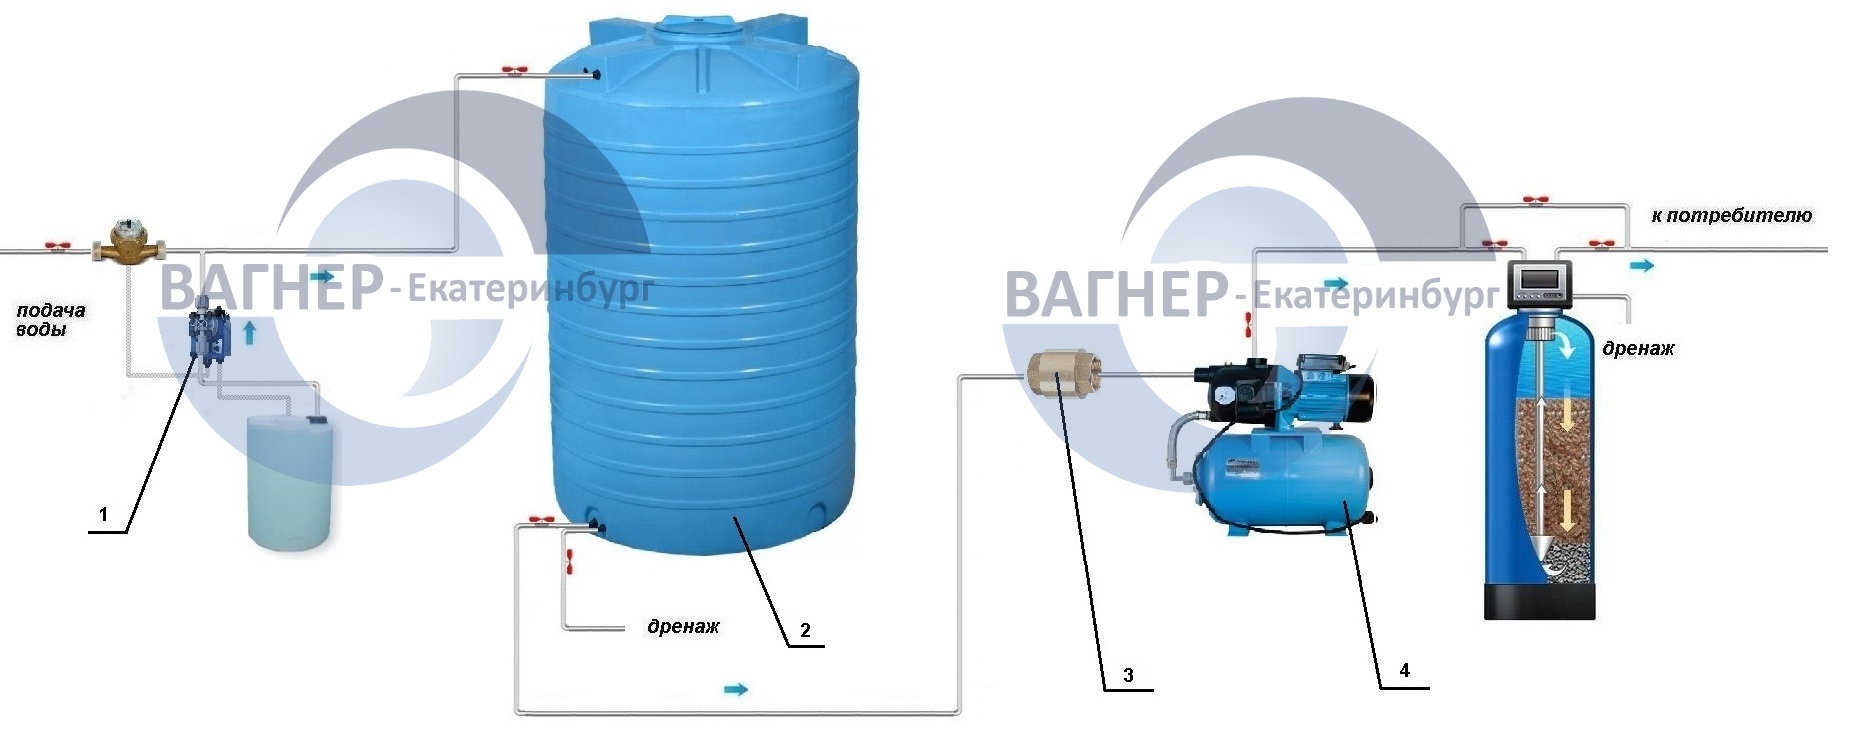 Рис. 3 - Схема реагентного обезжелезивания воды с дозированием гипохлорита